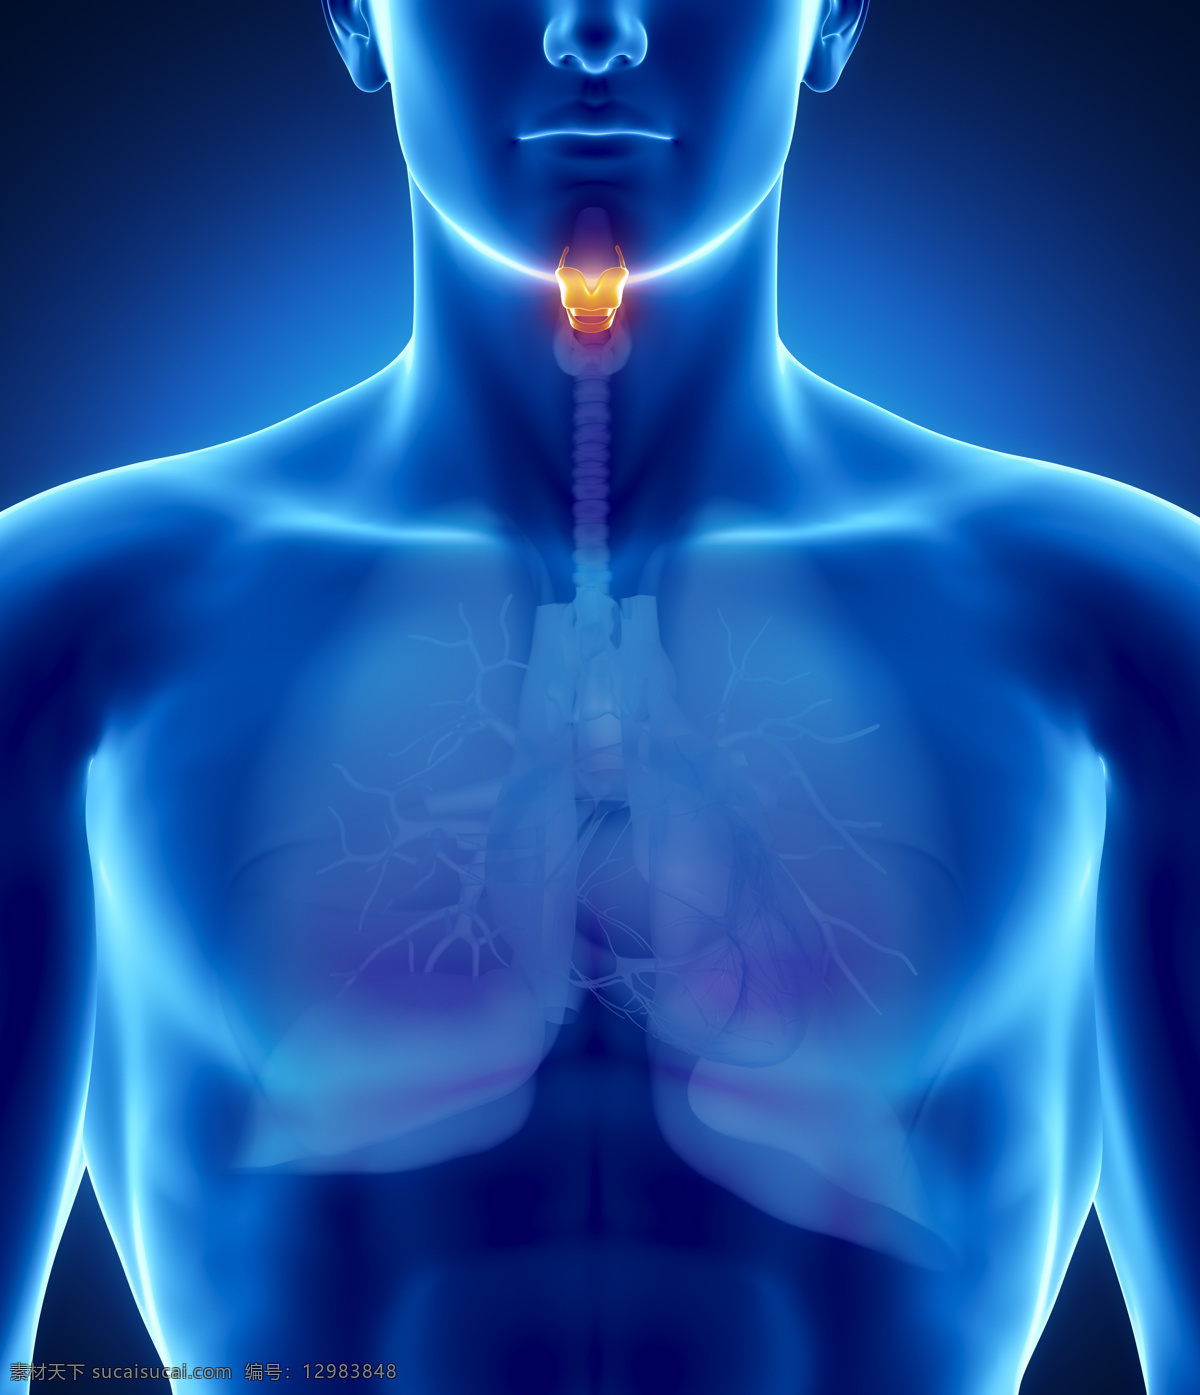 喉咙 器官 喉咙器官 男性人体器官 肺器官 人体器官 医疗科学 医学 人体器官图 人物图片